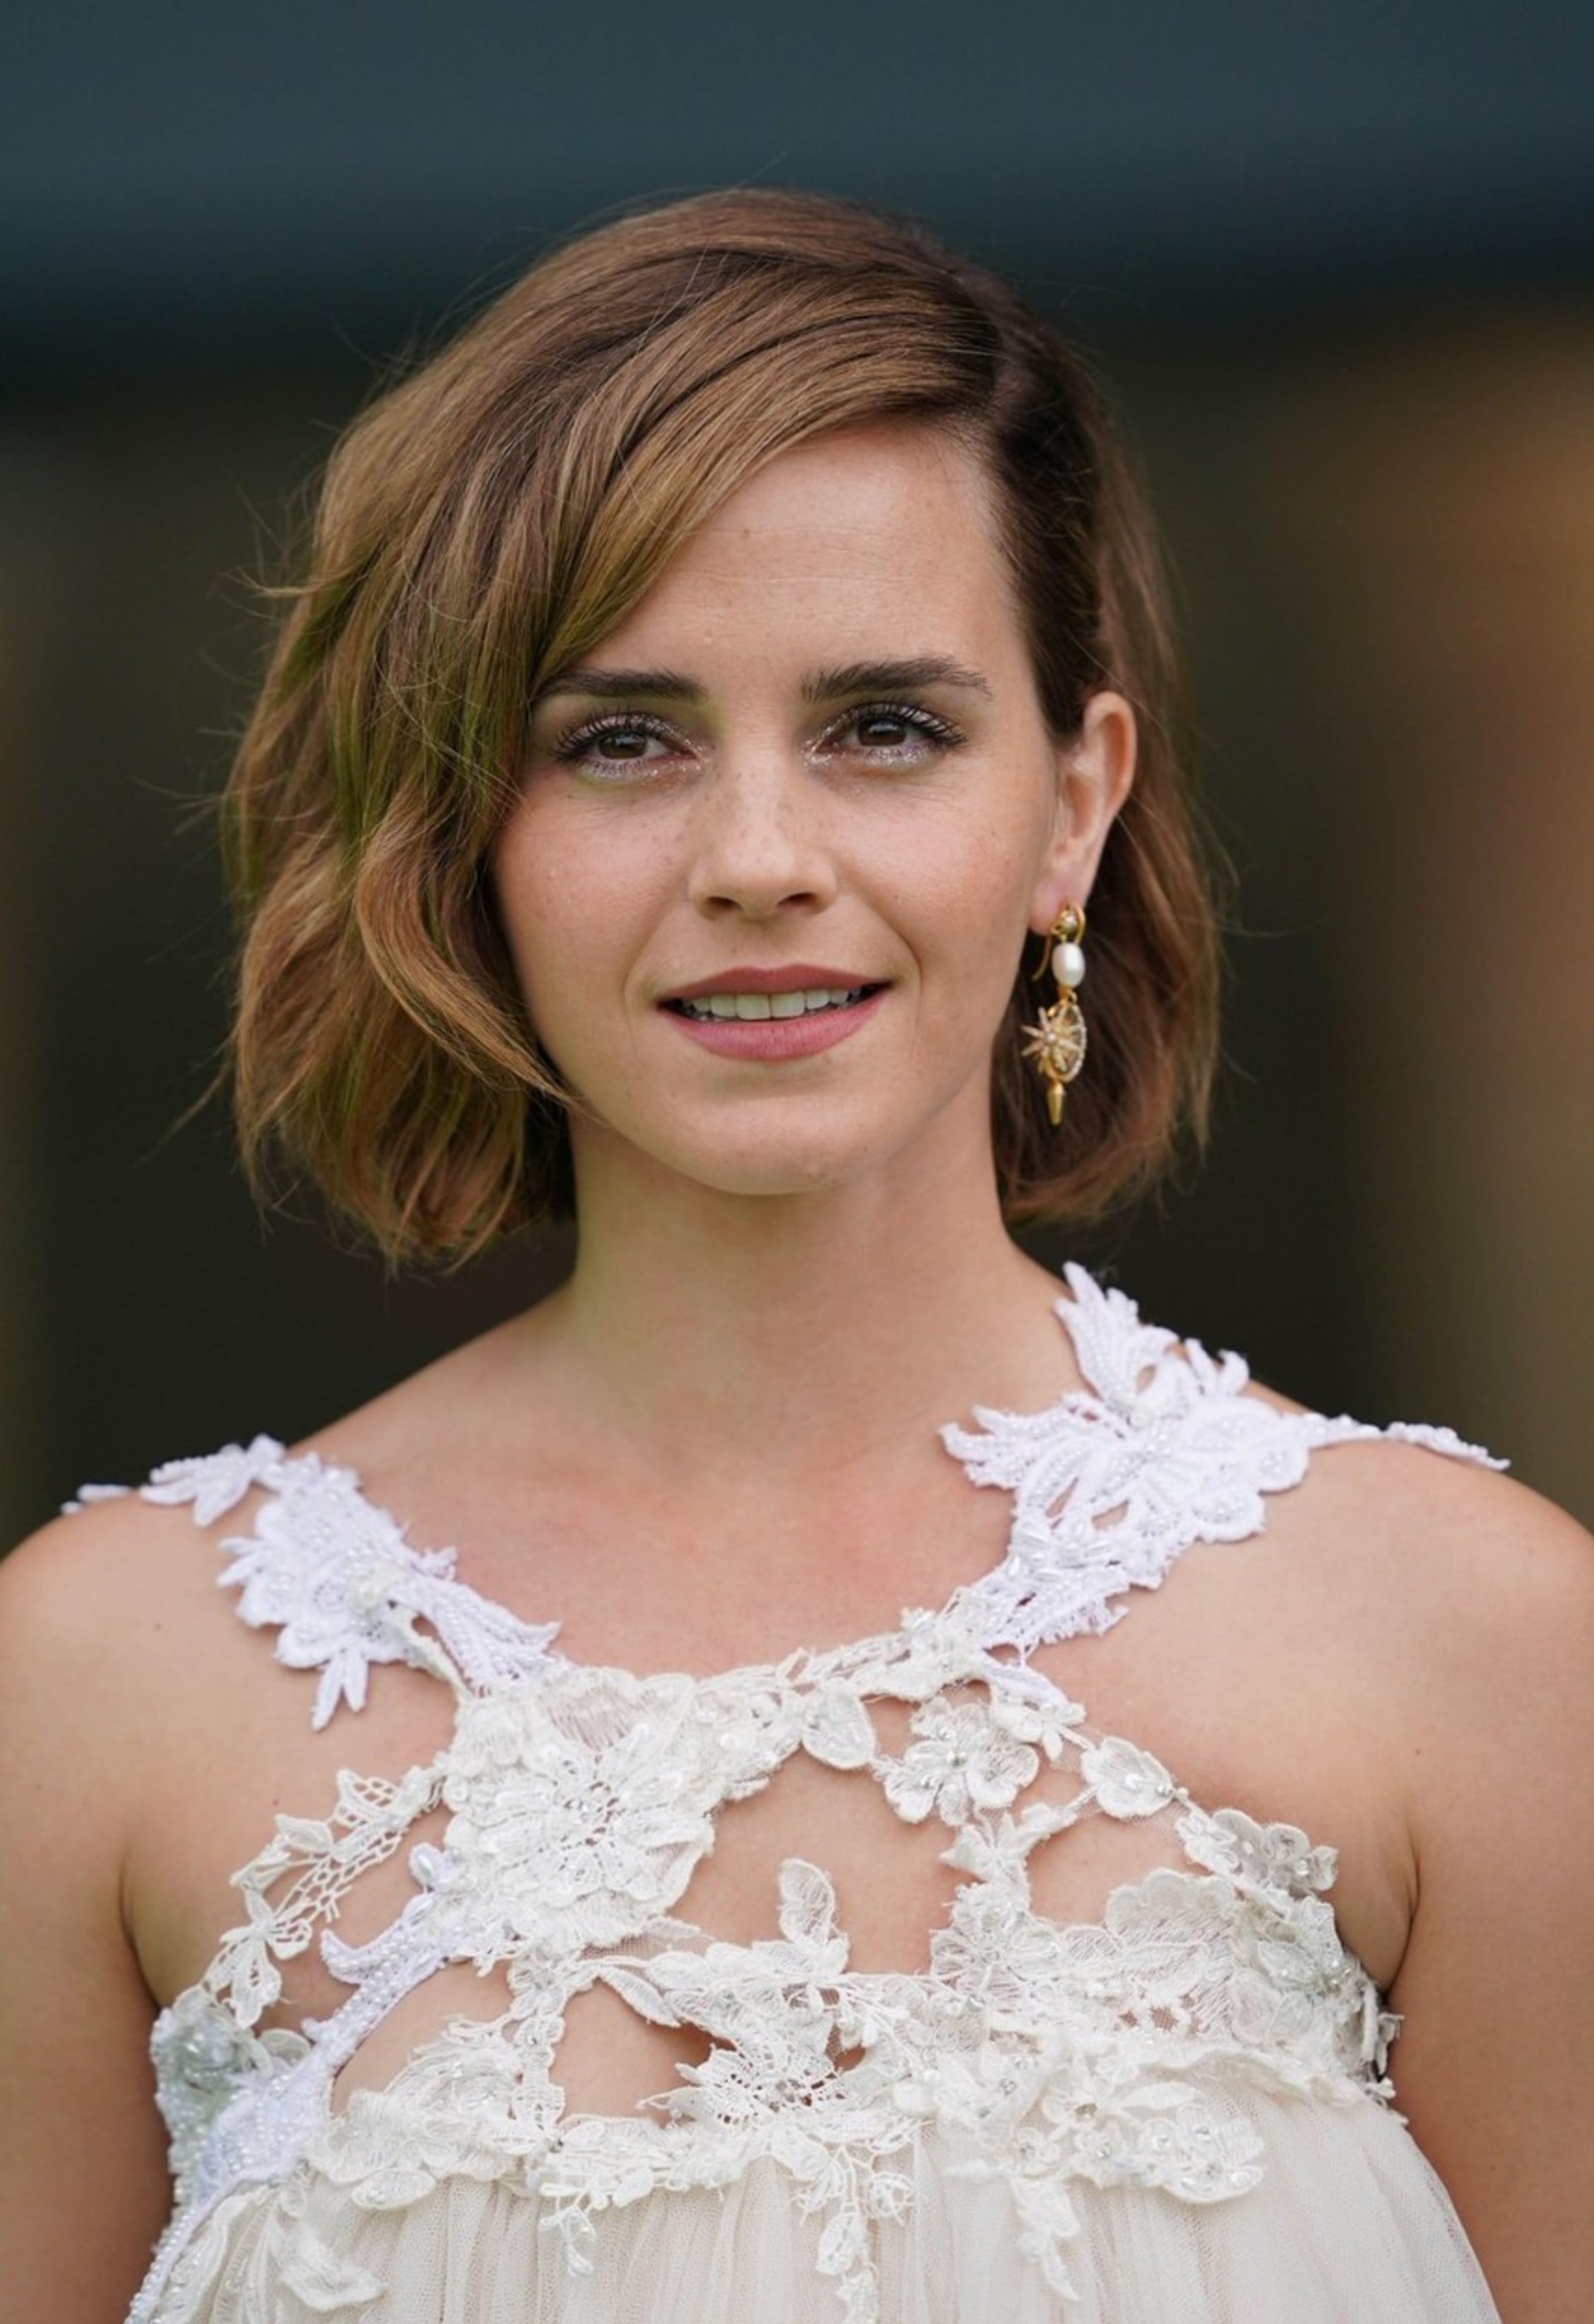 Proč si Emma Watson vzala volno od hraní?